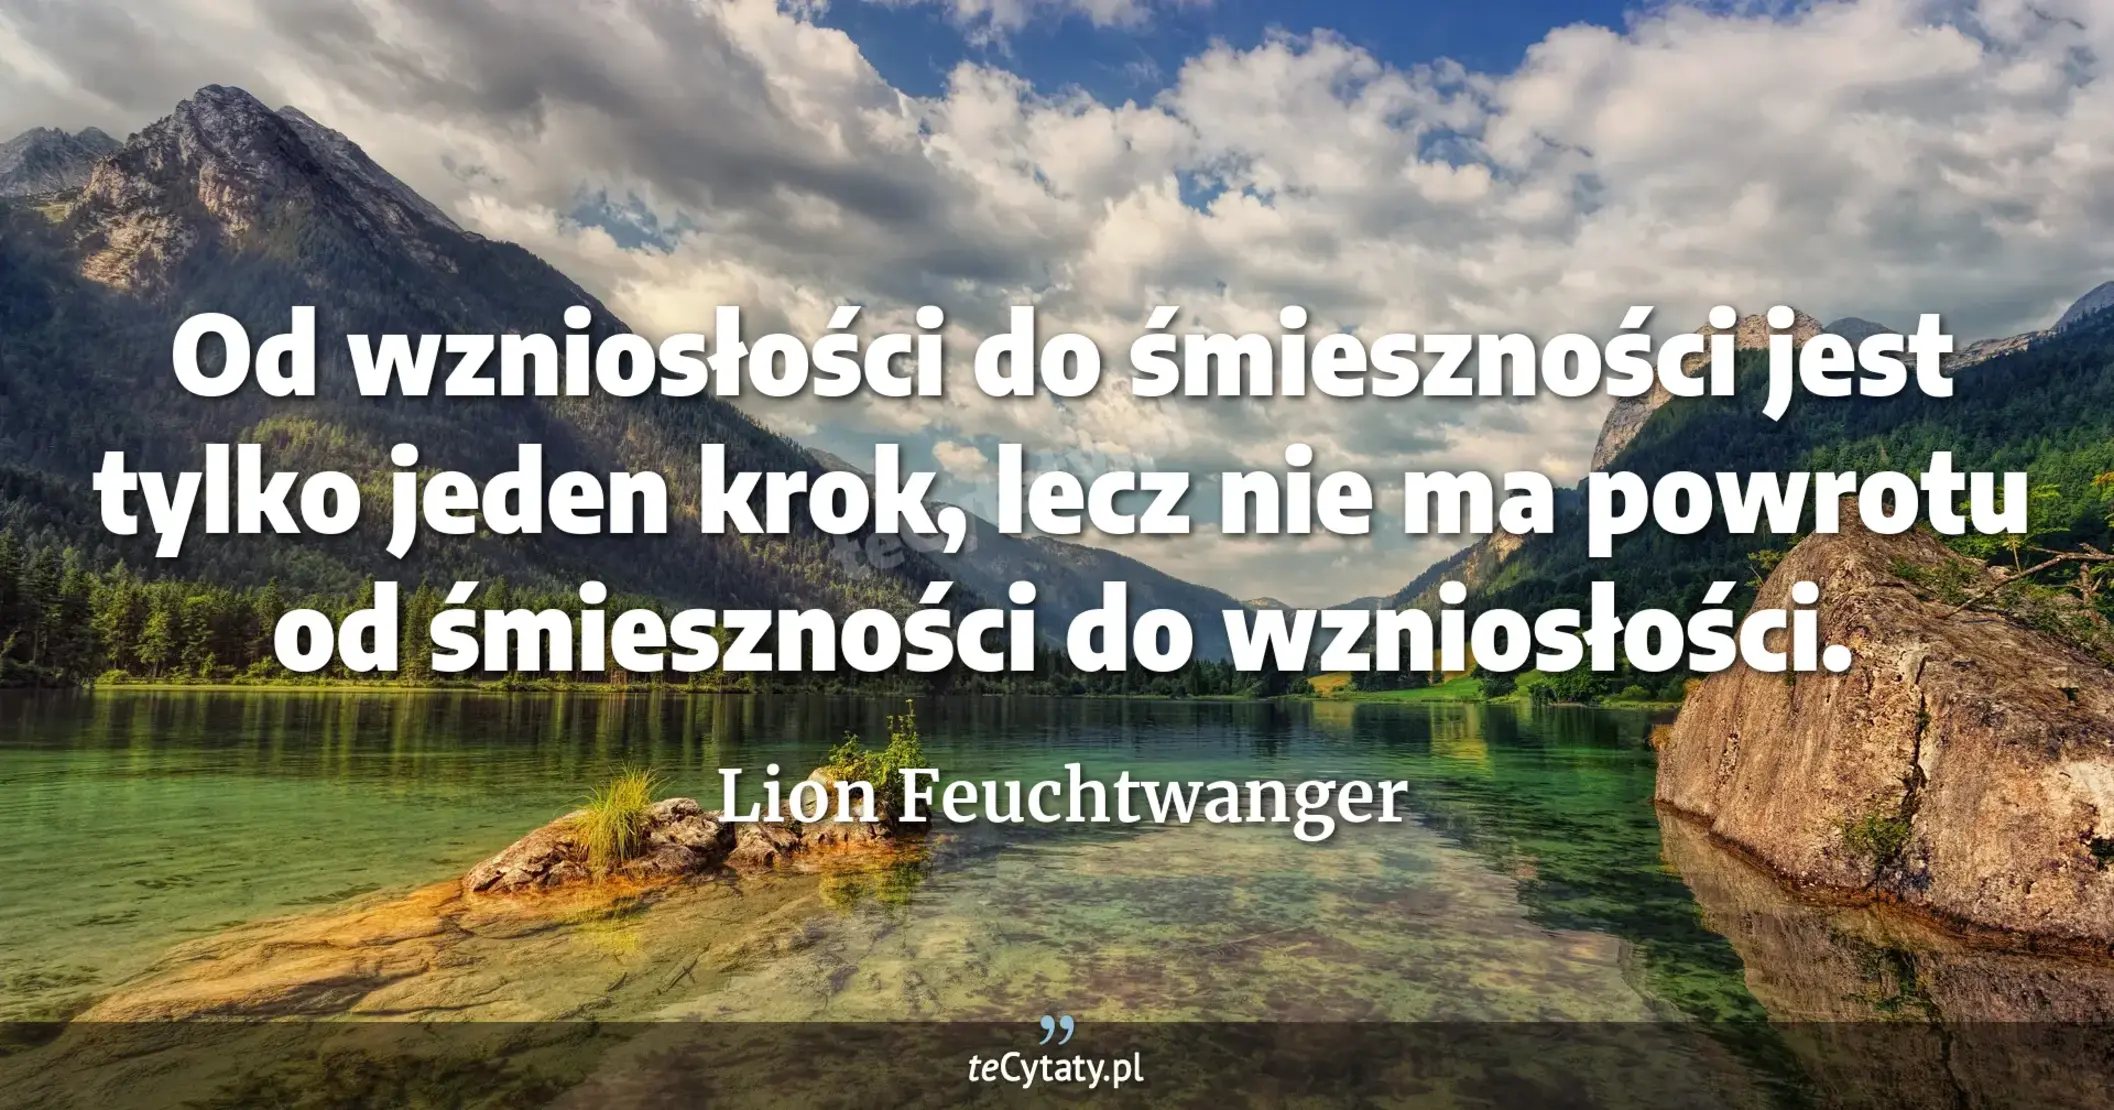 Od wzniosłości do śmieszności jest tylko jeden krok, lecz nie ma powrotu od śmieszności do wzniosłości. - Lion Feuchtwanger